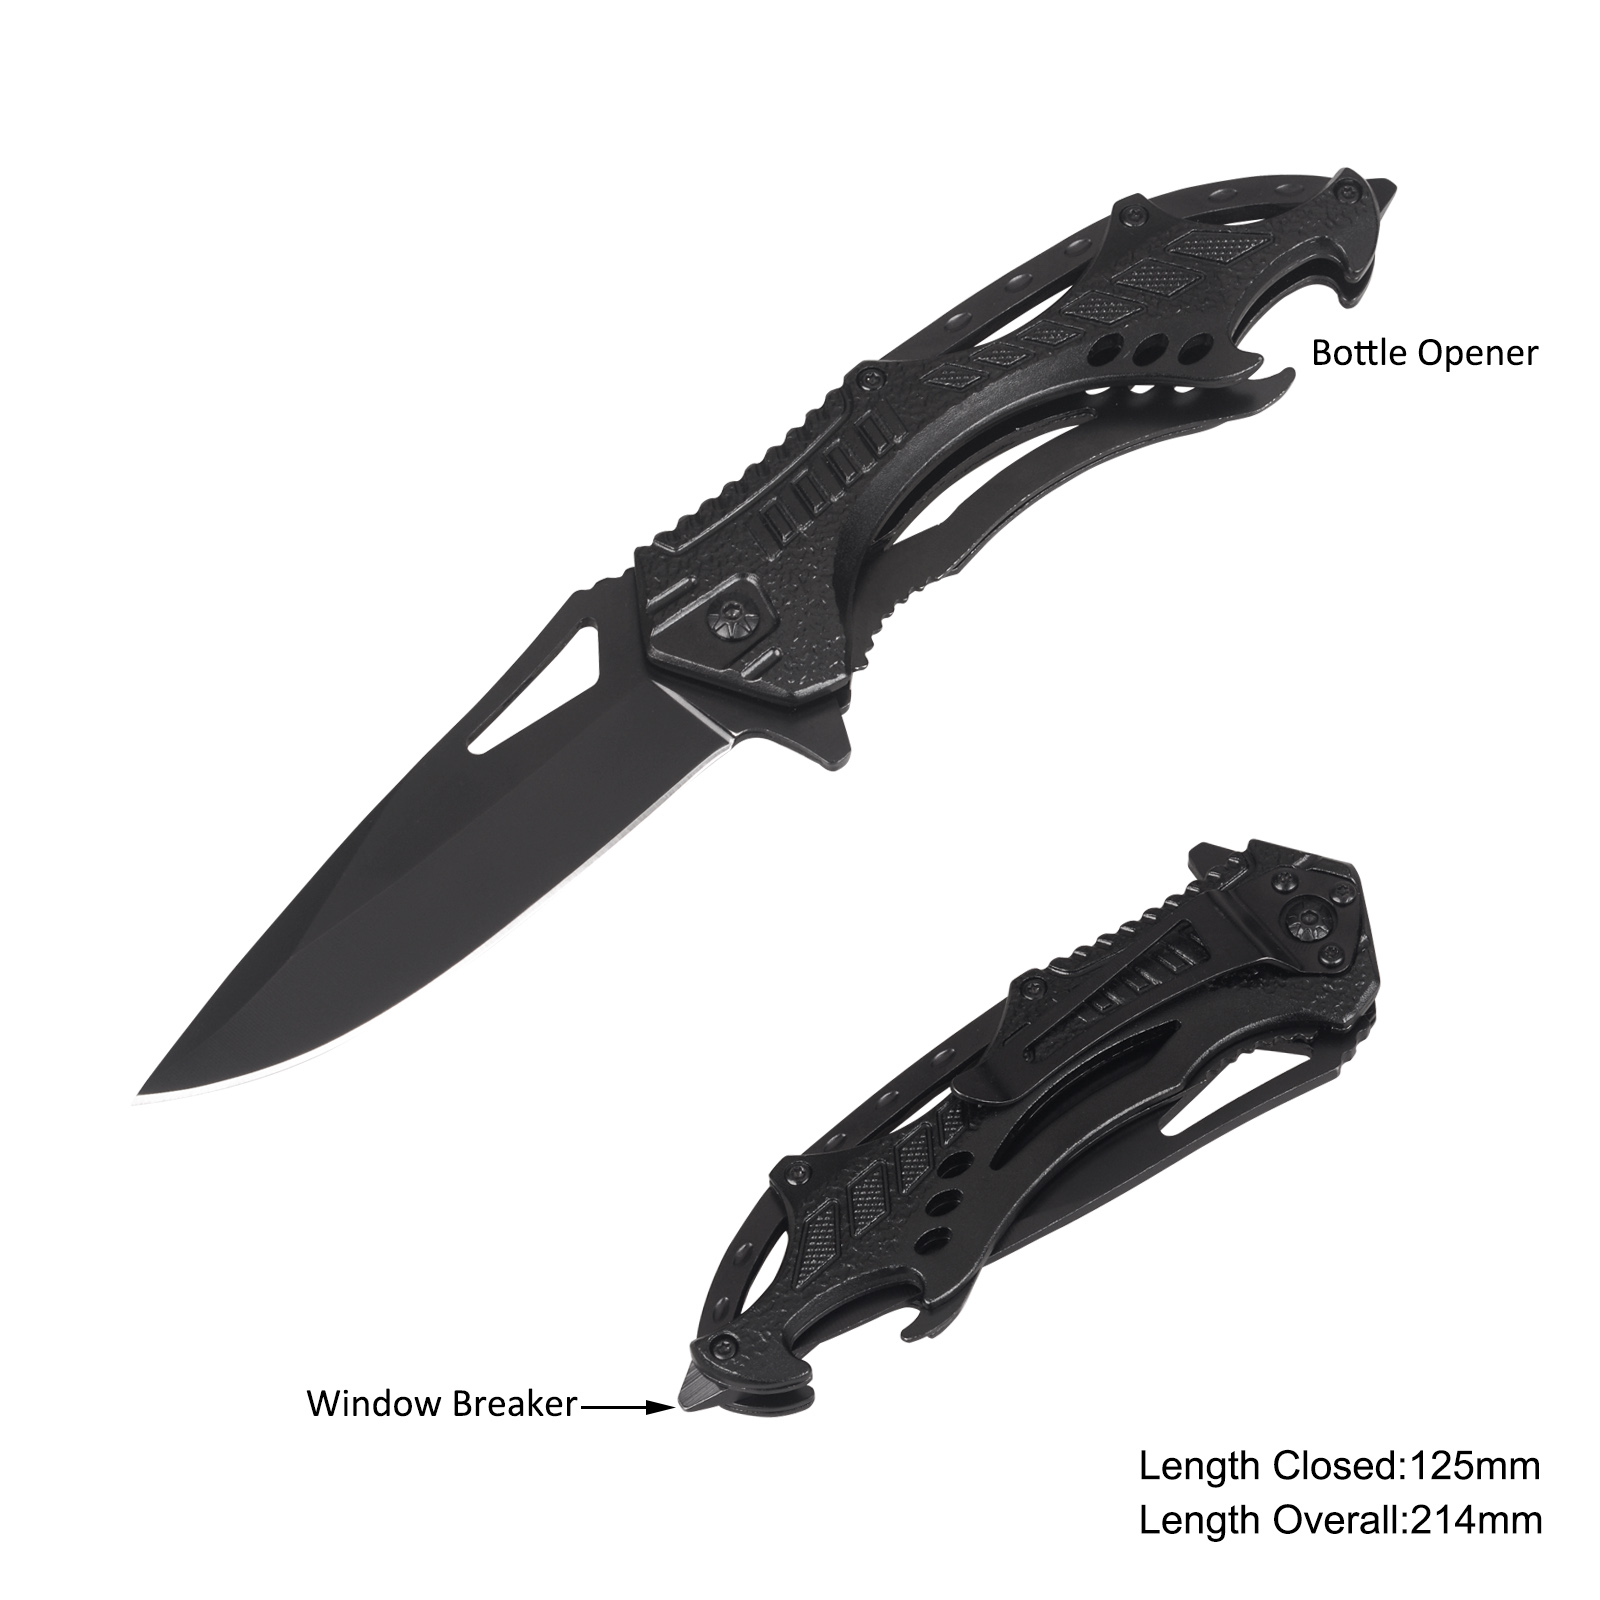 #31253 Folding Knife with Window Breaker